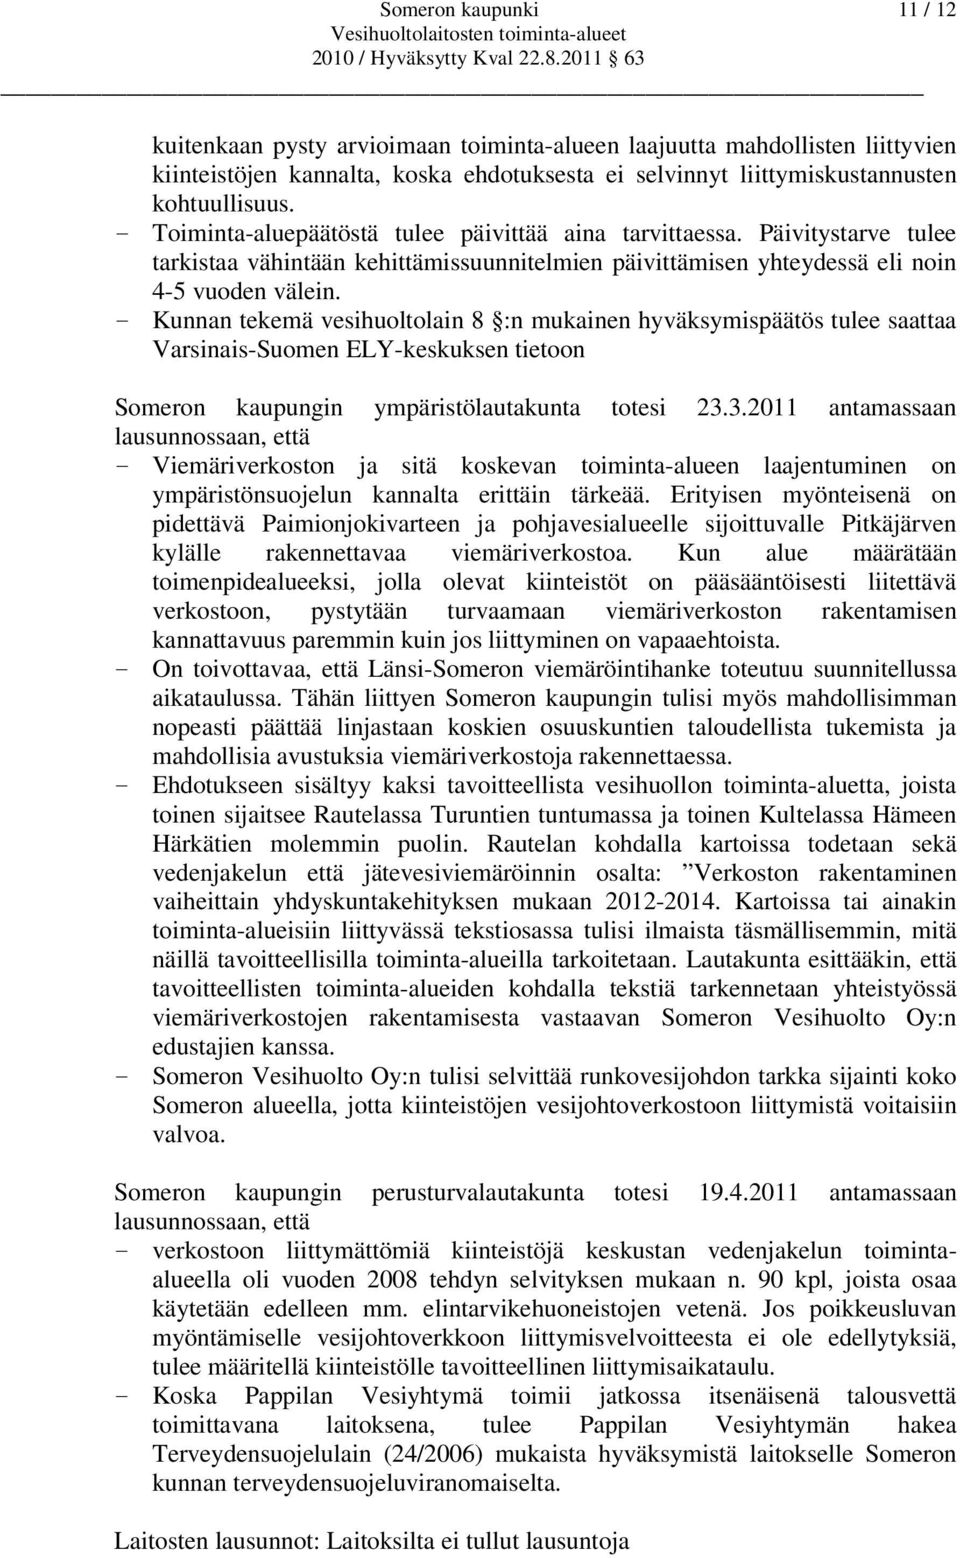 - Kunnan tekemä vesihuoltolain 8 :n mukainen hyväksymispäätös tulee saattaa Varsinais-Suomen ELY-keskuksen tietoon Someron kaupungin ympäristölautakunta totesi 23.